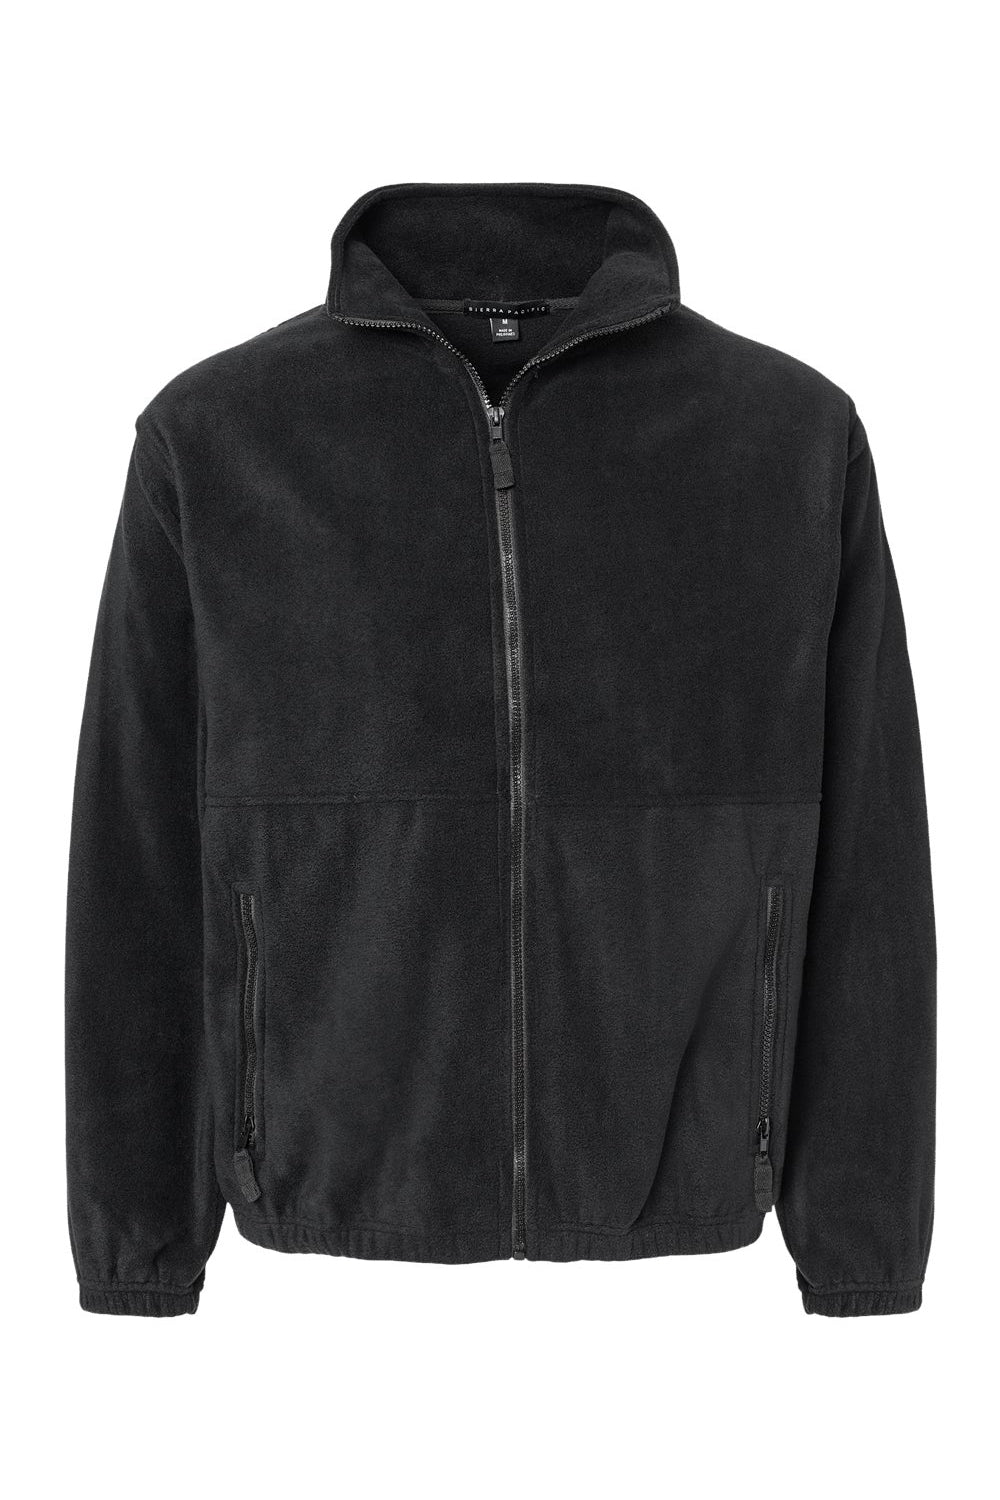 Burnside 3062 Mens Polar Fleece Full Zip Sweatshirt Black Flat Front